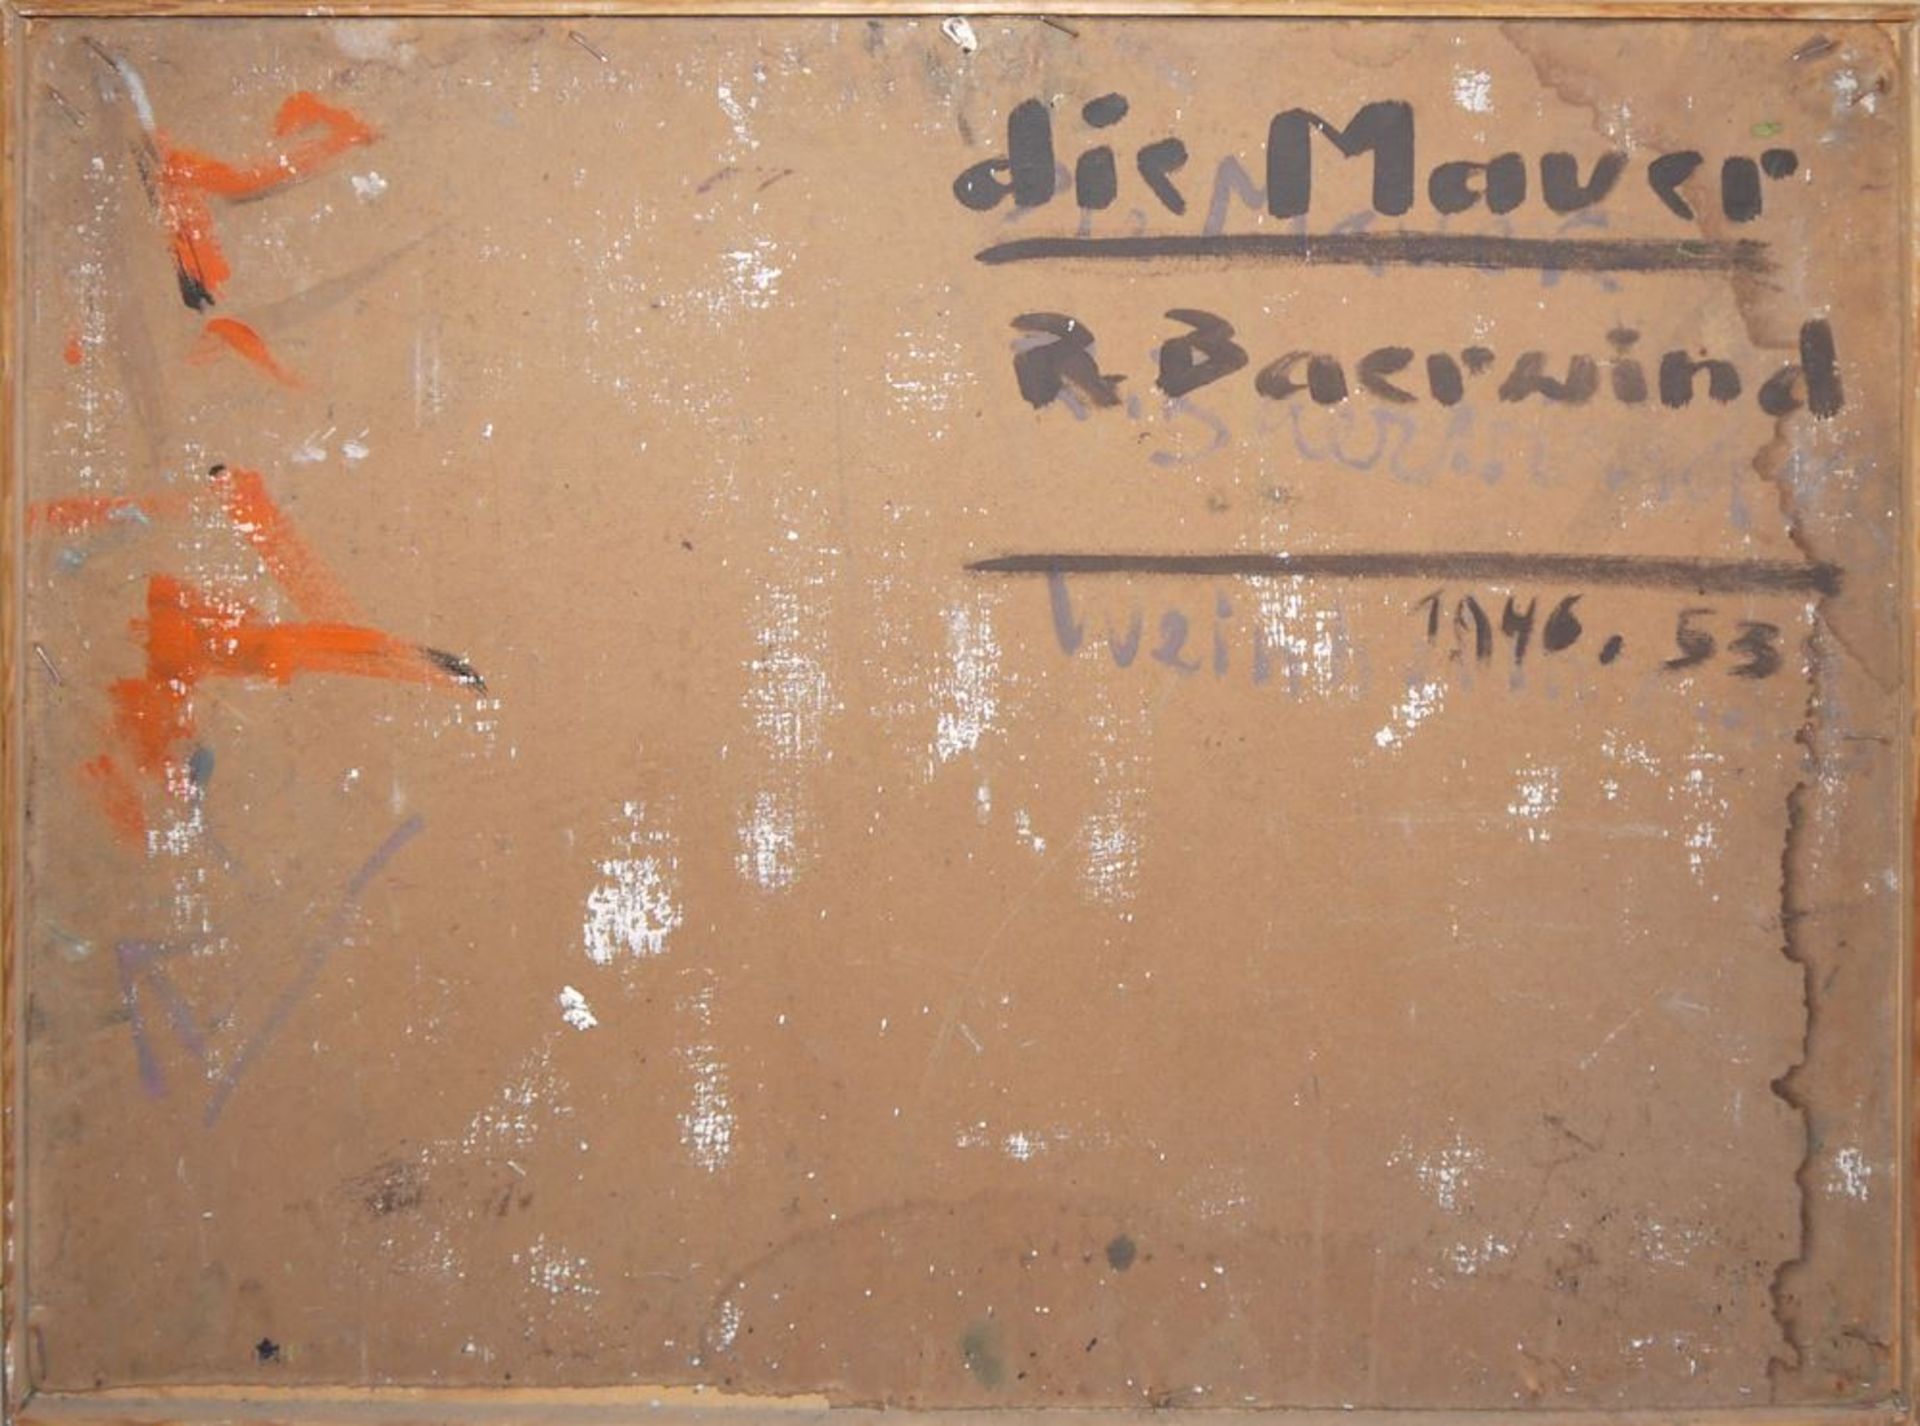 Rudi Baerwind, "Die Mauer", signiertes Ölgemälde von 1946, gerahmt - Image 3 of 3